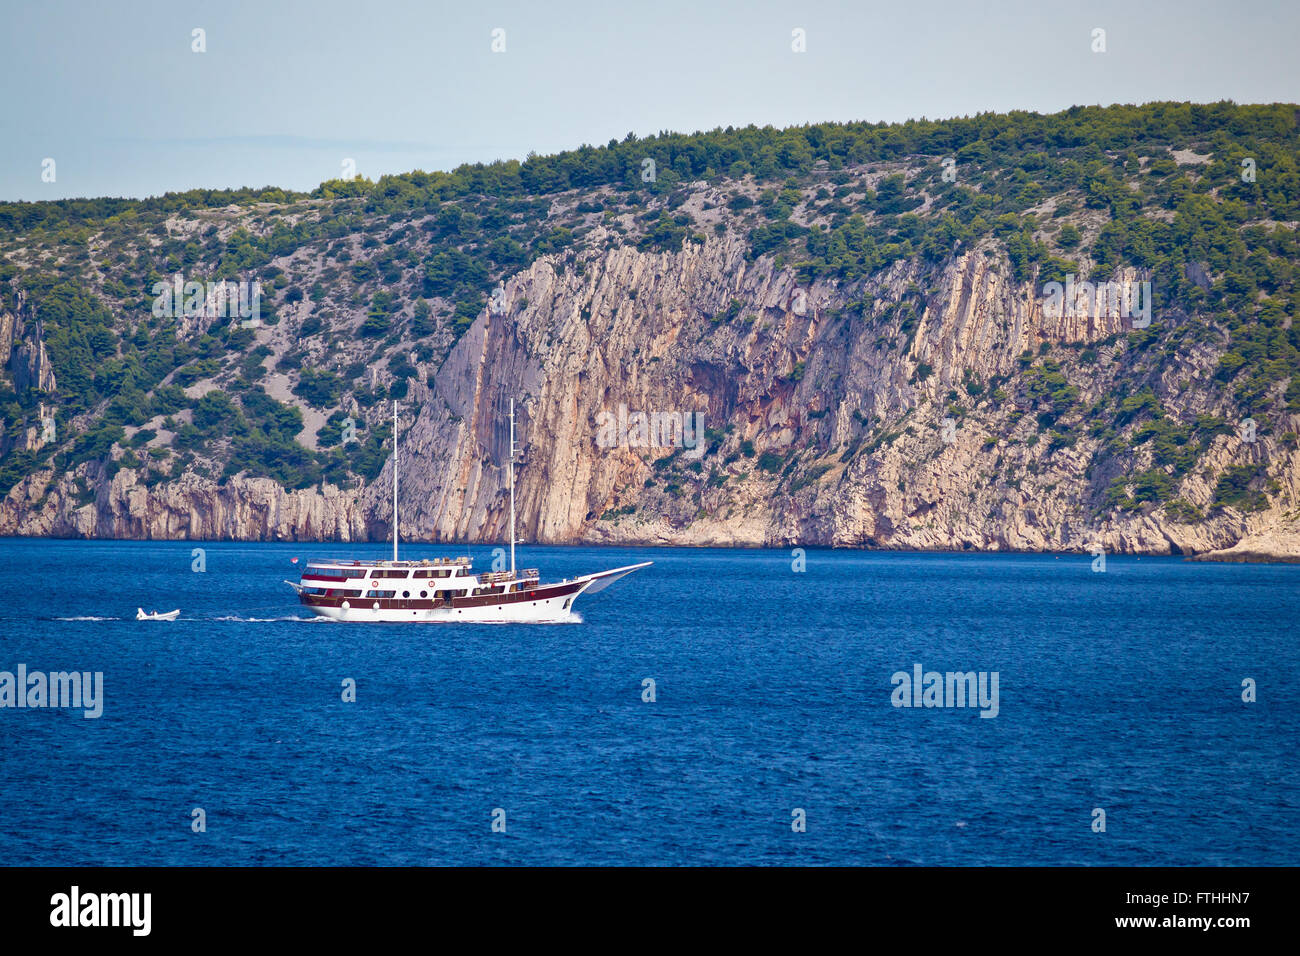 Island of Solta cliffs boat cruising, Dalmatia, Croatia Stock Photo